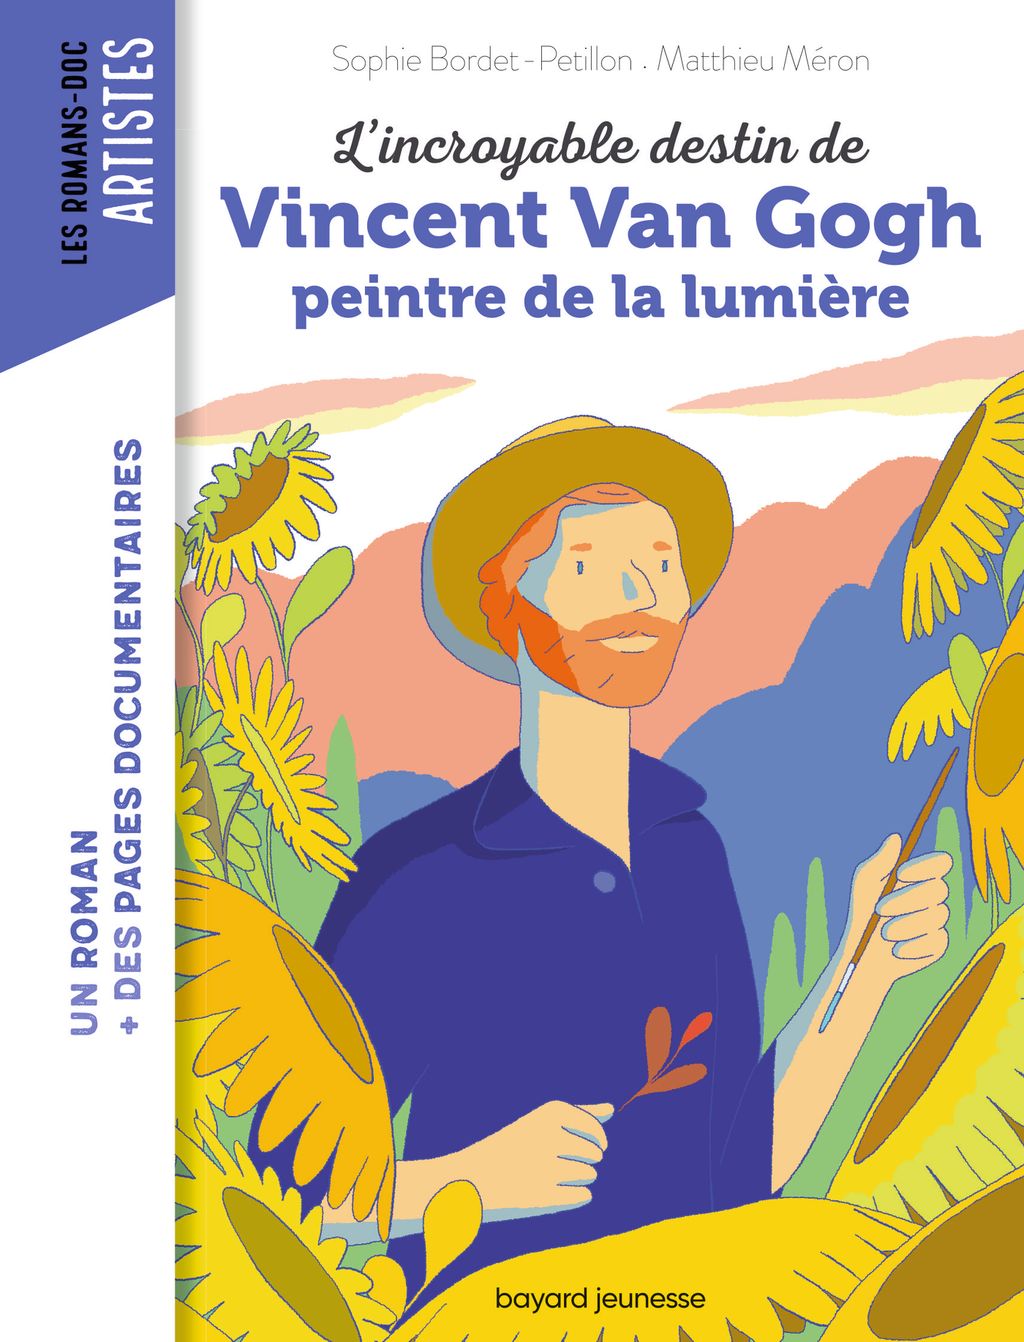 « L’incroyable destin de Van Gogh, peintre de la lumière » cover